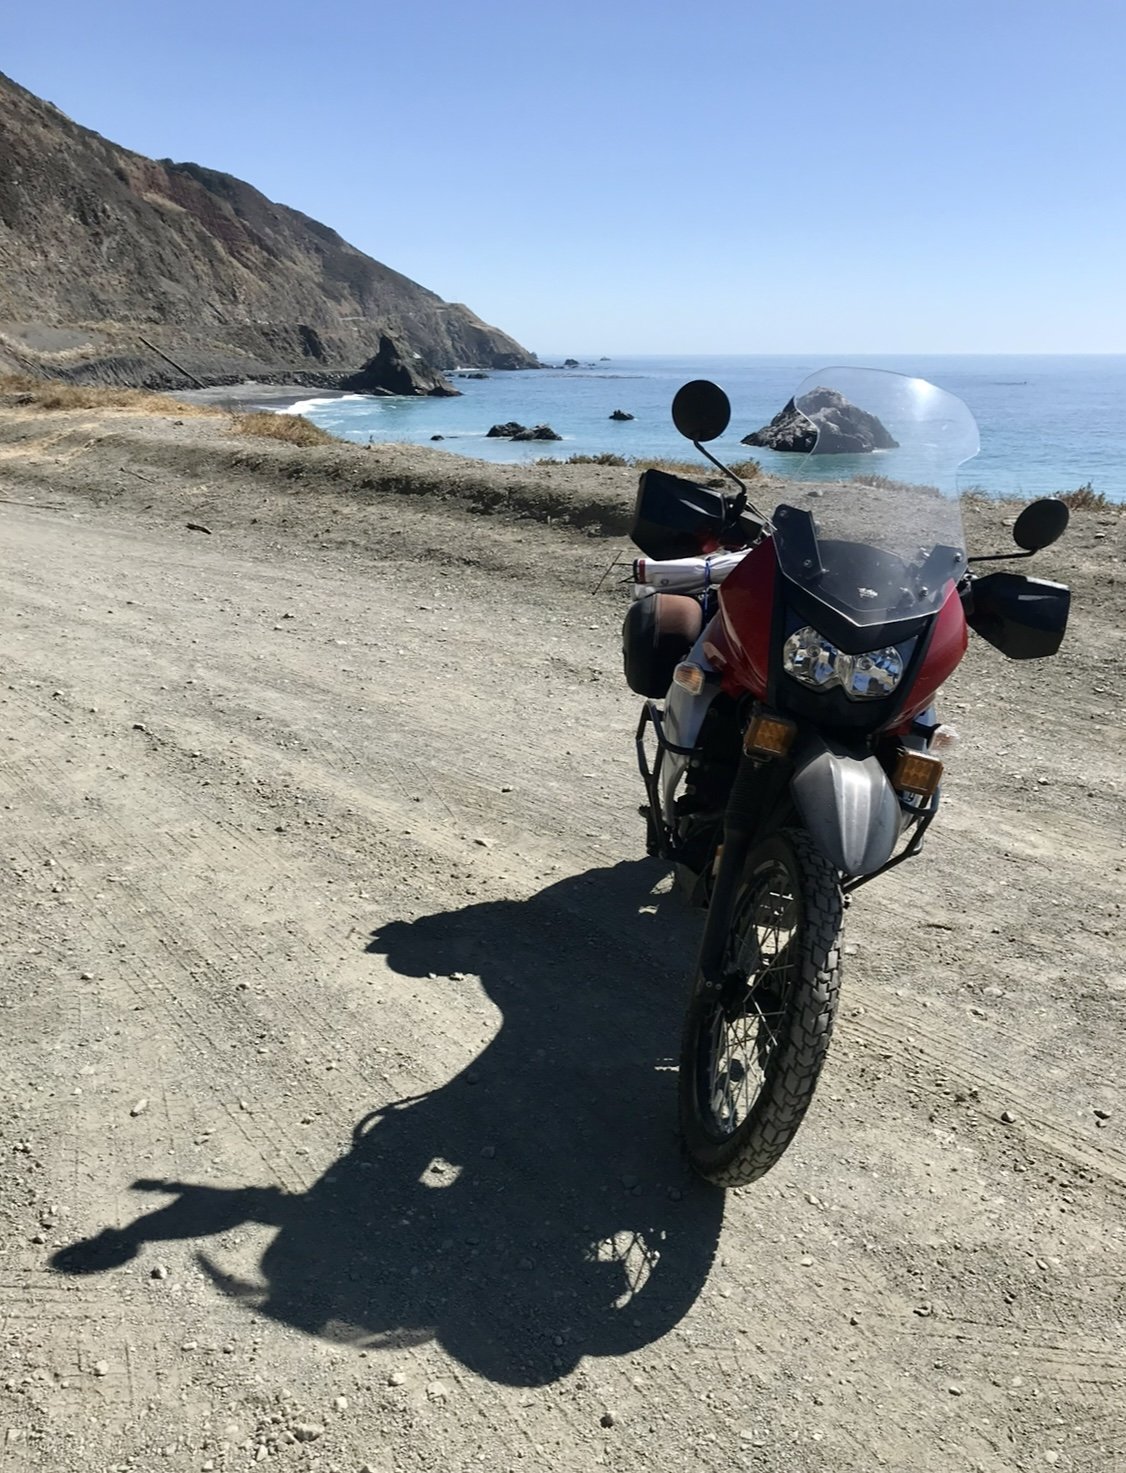 Motorcycle Chain Oiler  Extend Your Horizon – Motobriiz